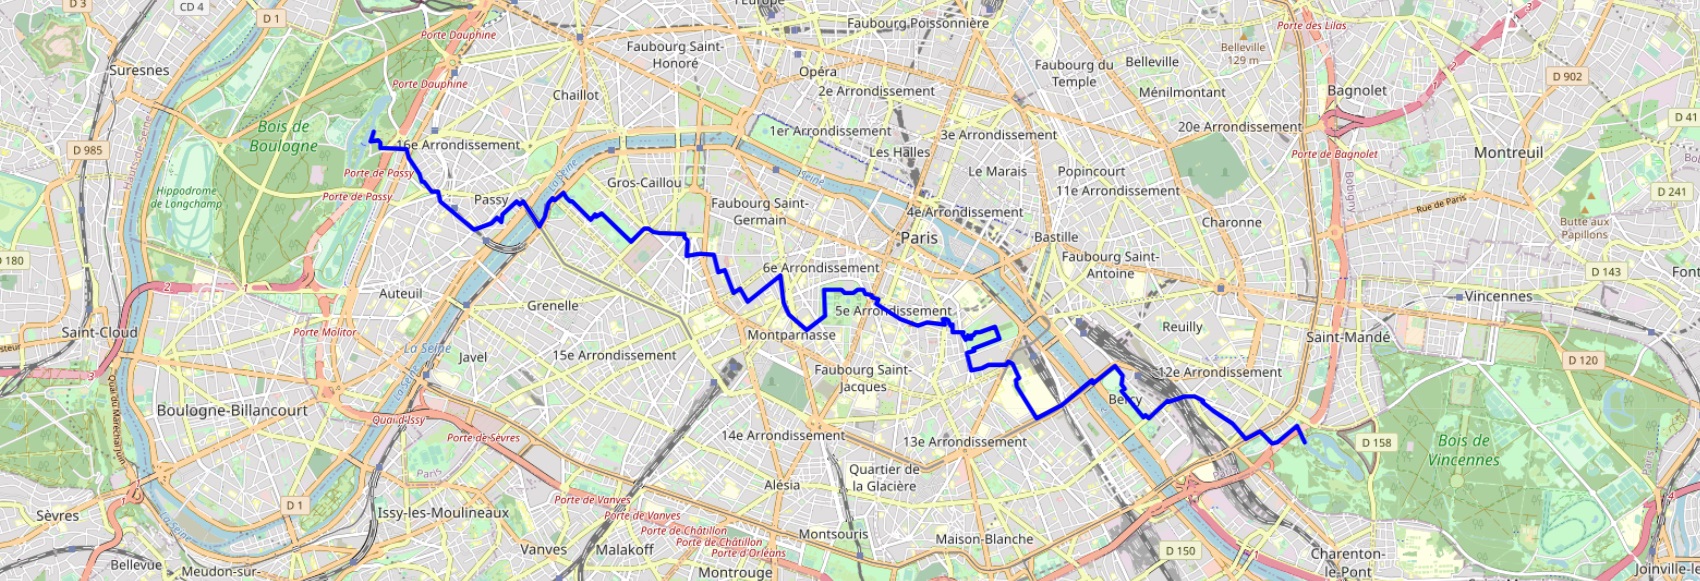 Hiking in Paris from Bois de Boulogne to Bois de Vincennes 1